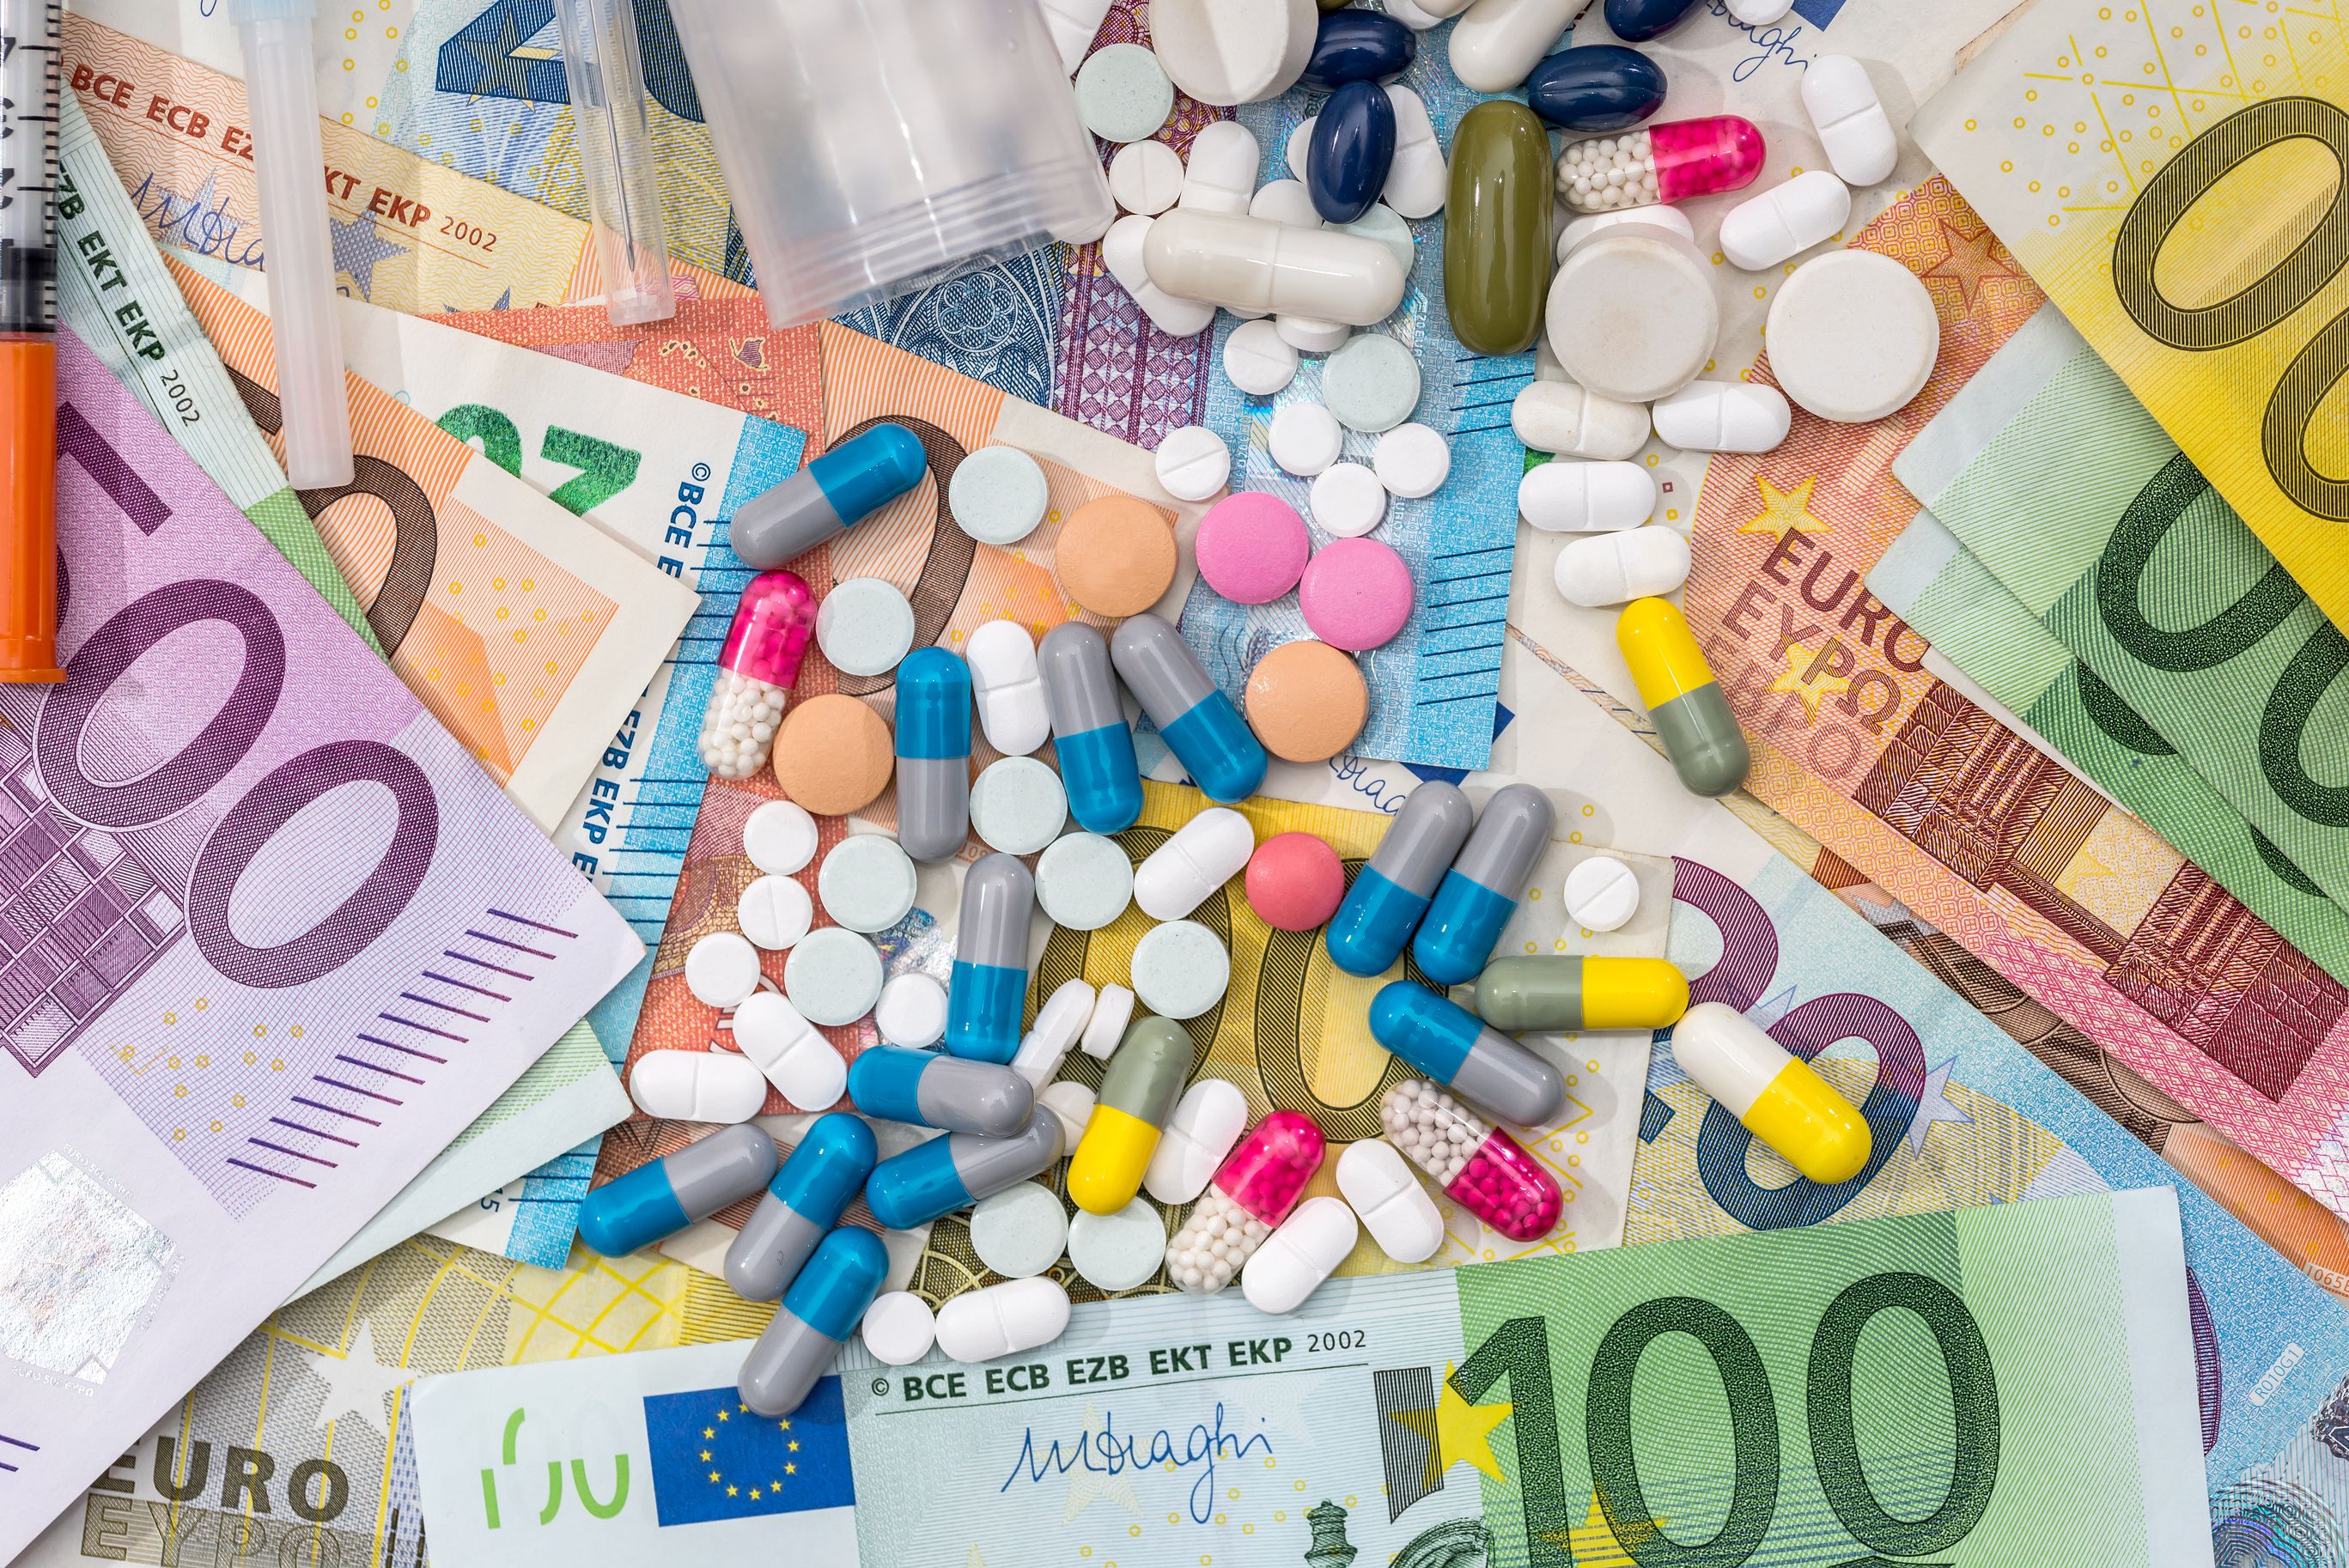 Mediweb.sk - Neverejné zmluvy a výnimky v cenovej regulácii môžu viesť k  nekontrolovanému rastu výdavkov na lieky